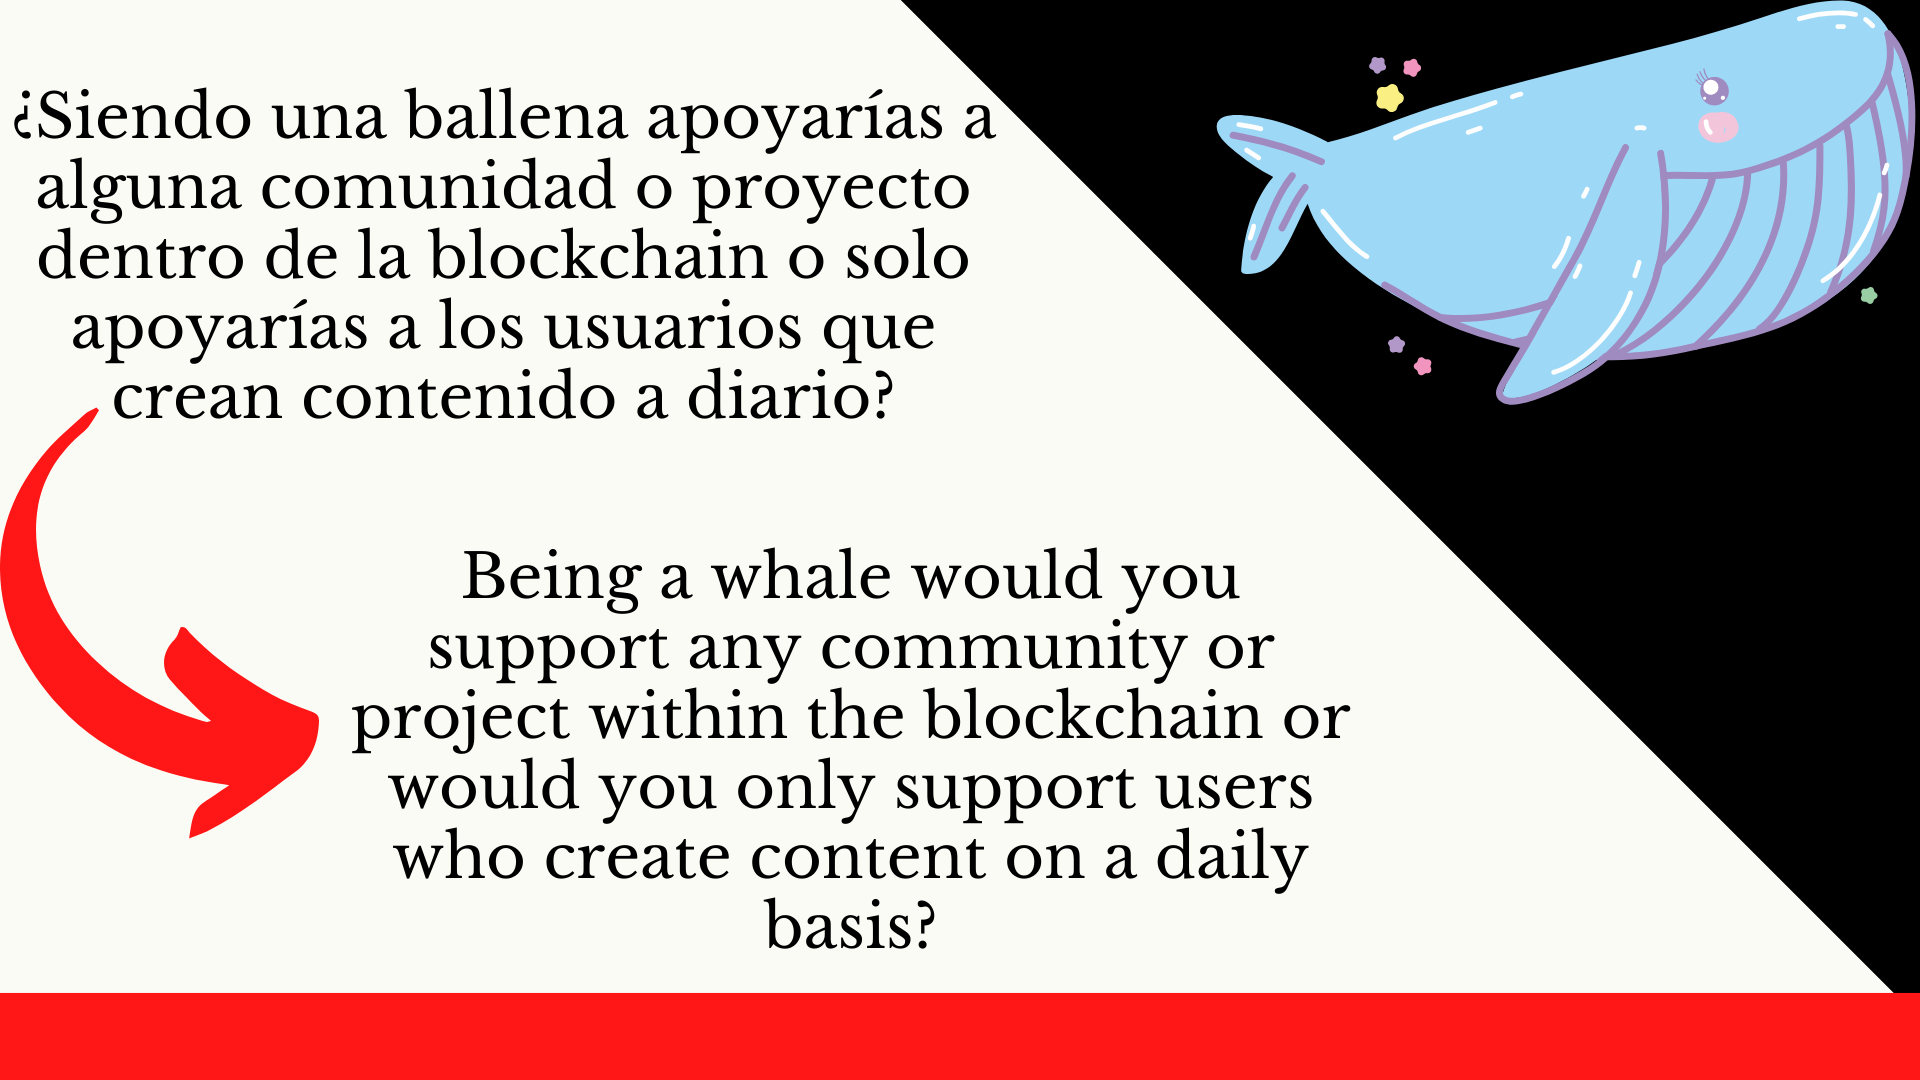 ¿Siendo una ballena apoyarías a alguna comunidad o proyecto dentro de la blockchain o solo apoyarías a los usuarios que crean contenido a diario.png